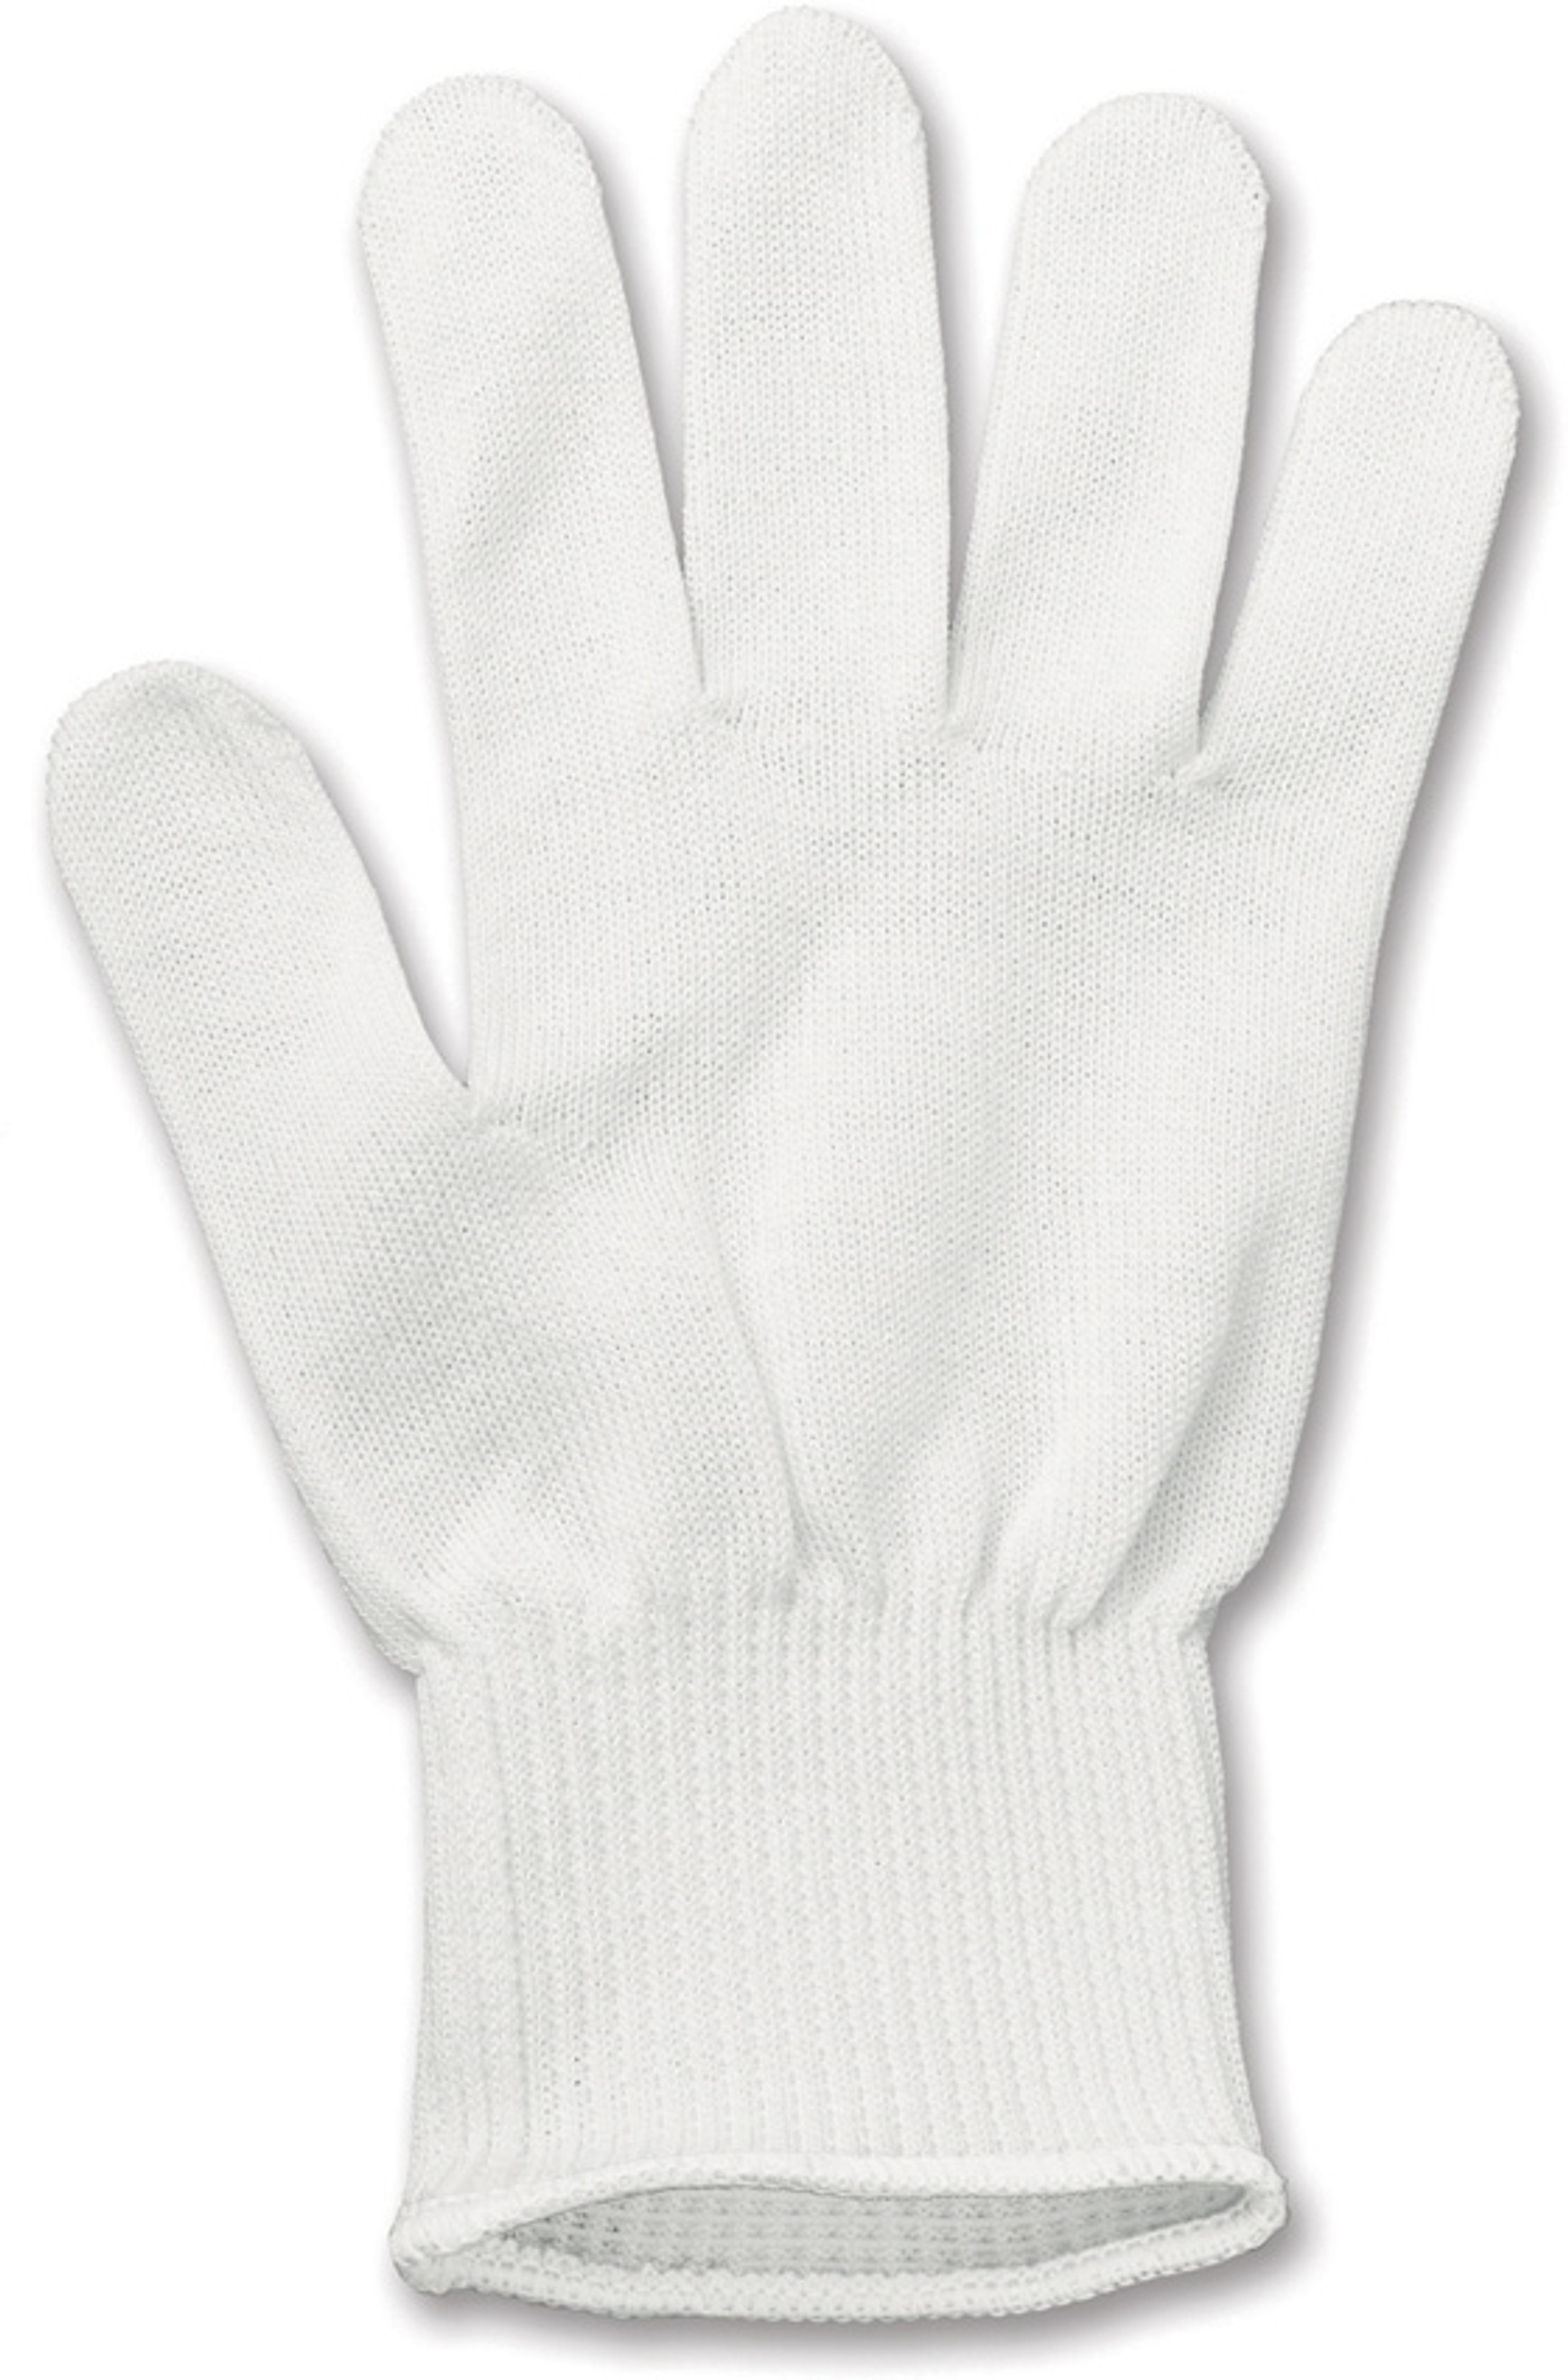 Cut Resistant Glove Large VN79049L